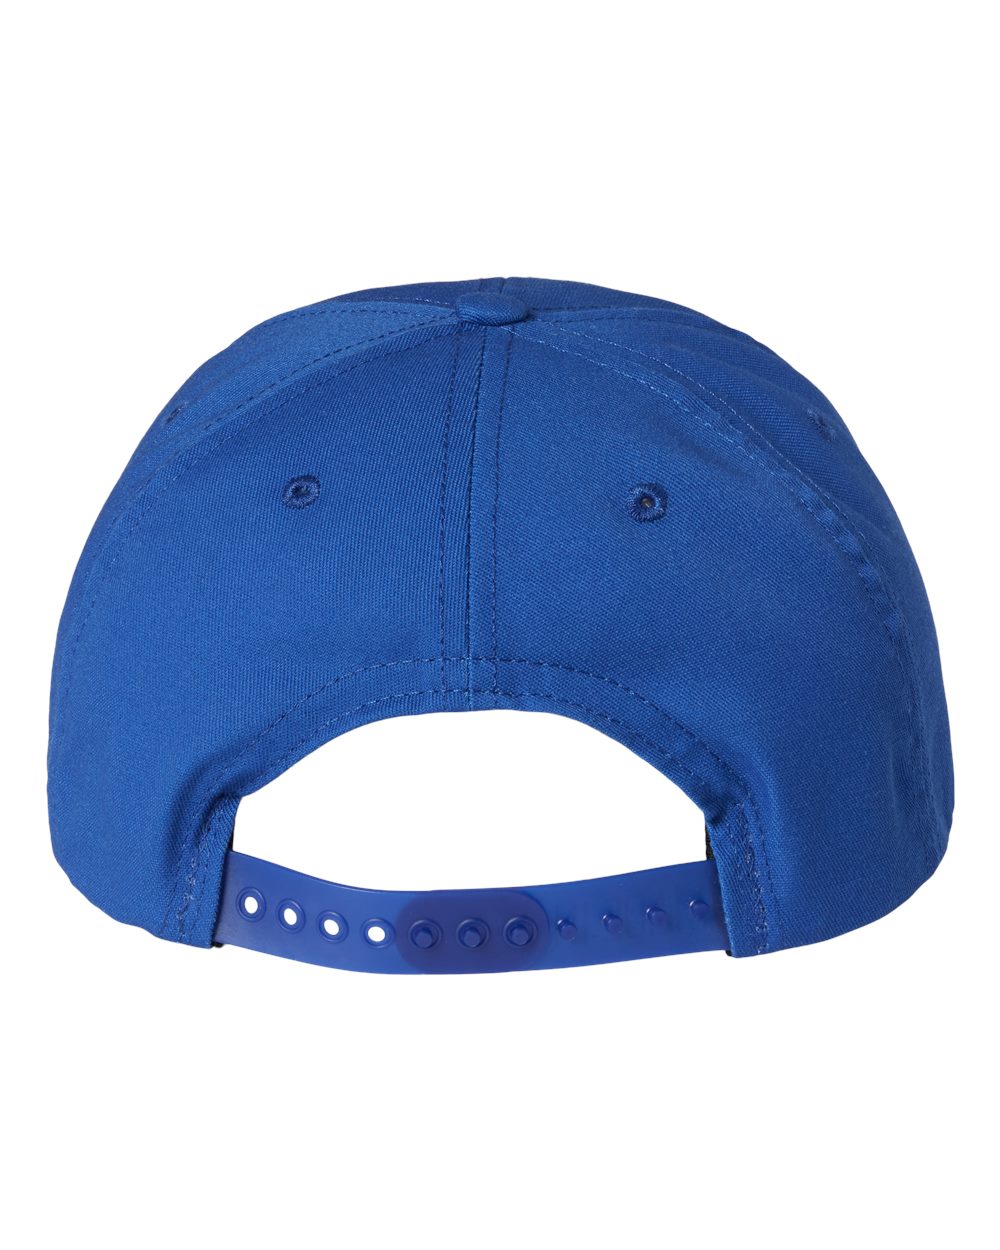 Classic Caps Mens USA Made Dad Cap Hat USA200 Snapback Closure Pre Curved Visor